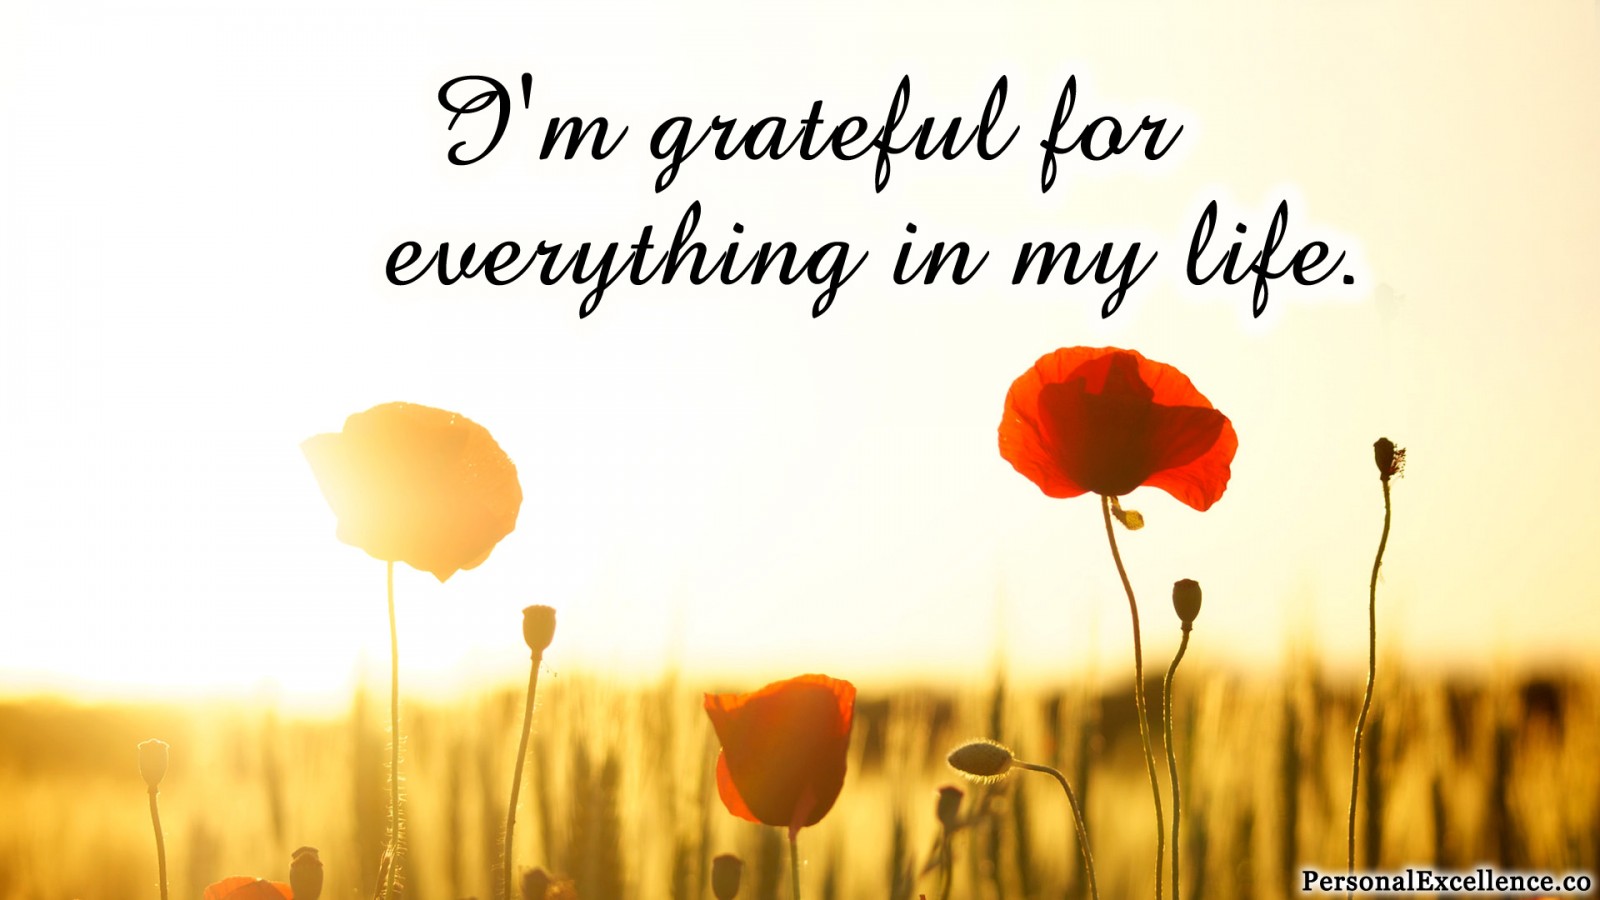 Affirmation Challenge Day 5 [Gratitude] Im grateful for